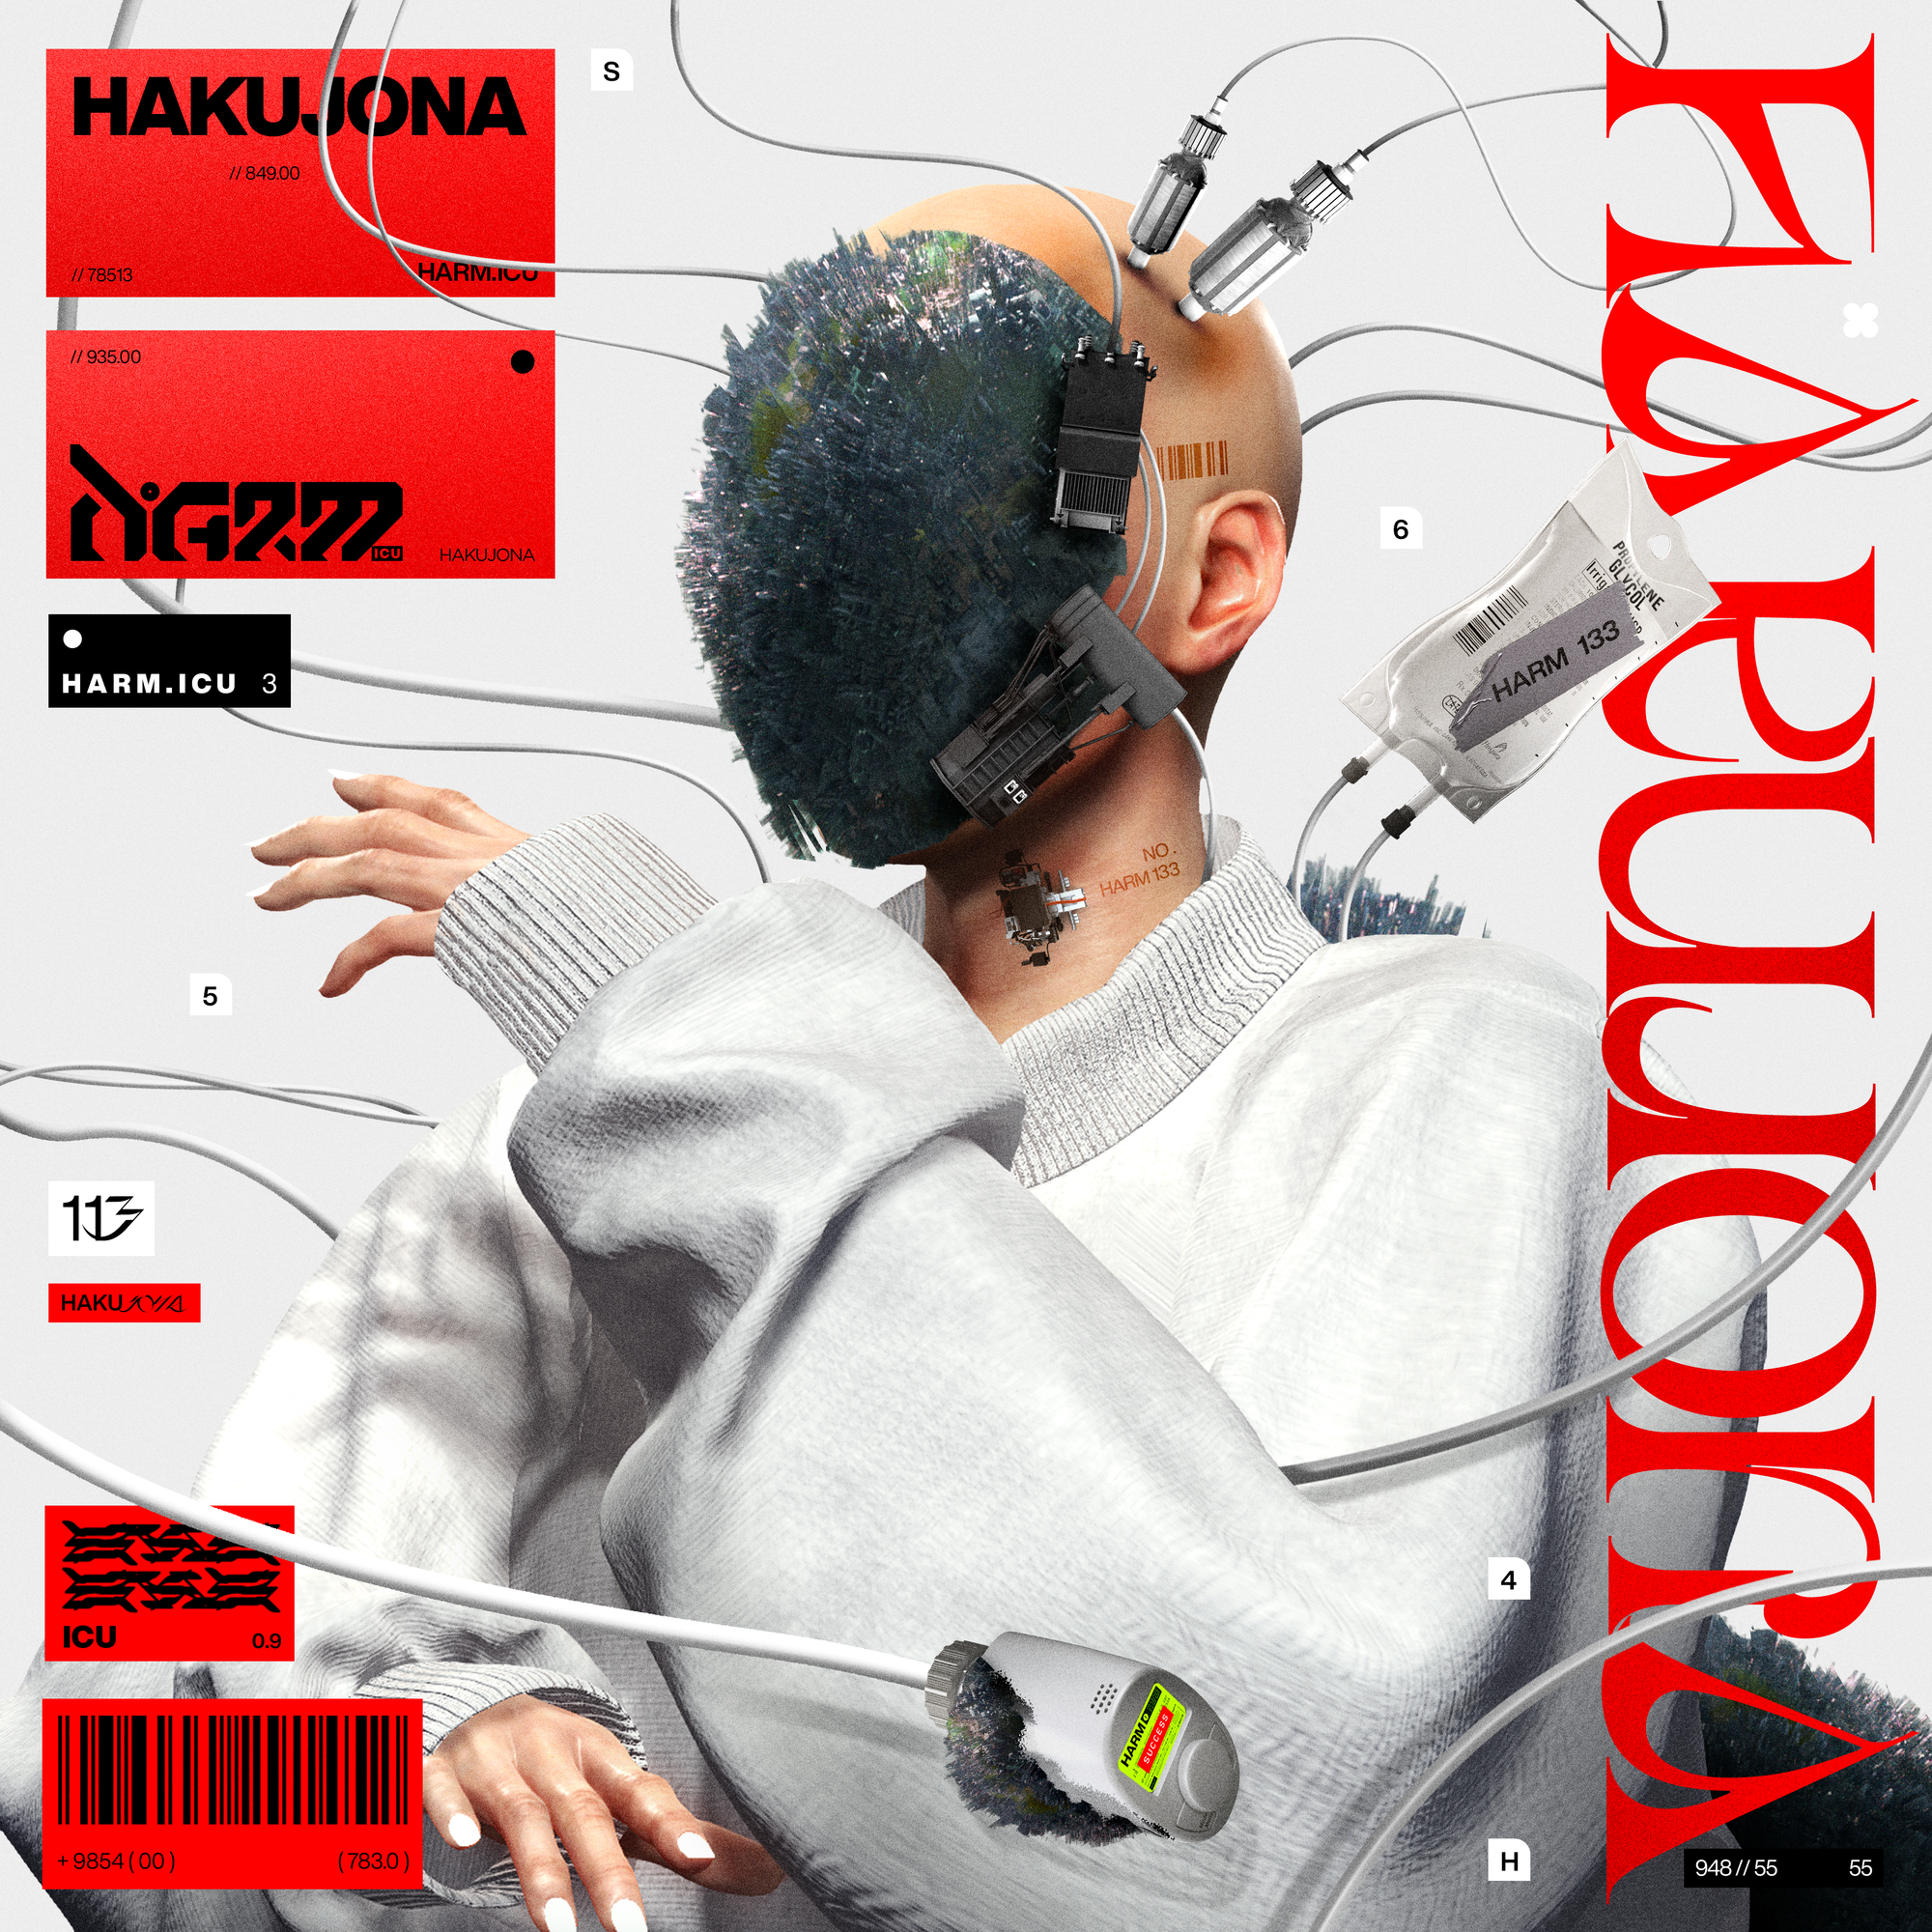 HARM.icu - Hakujona